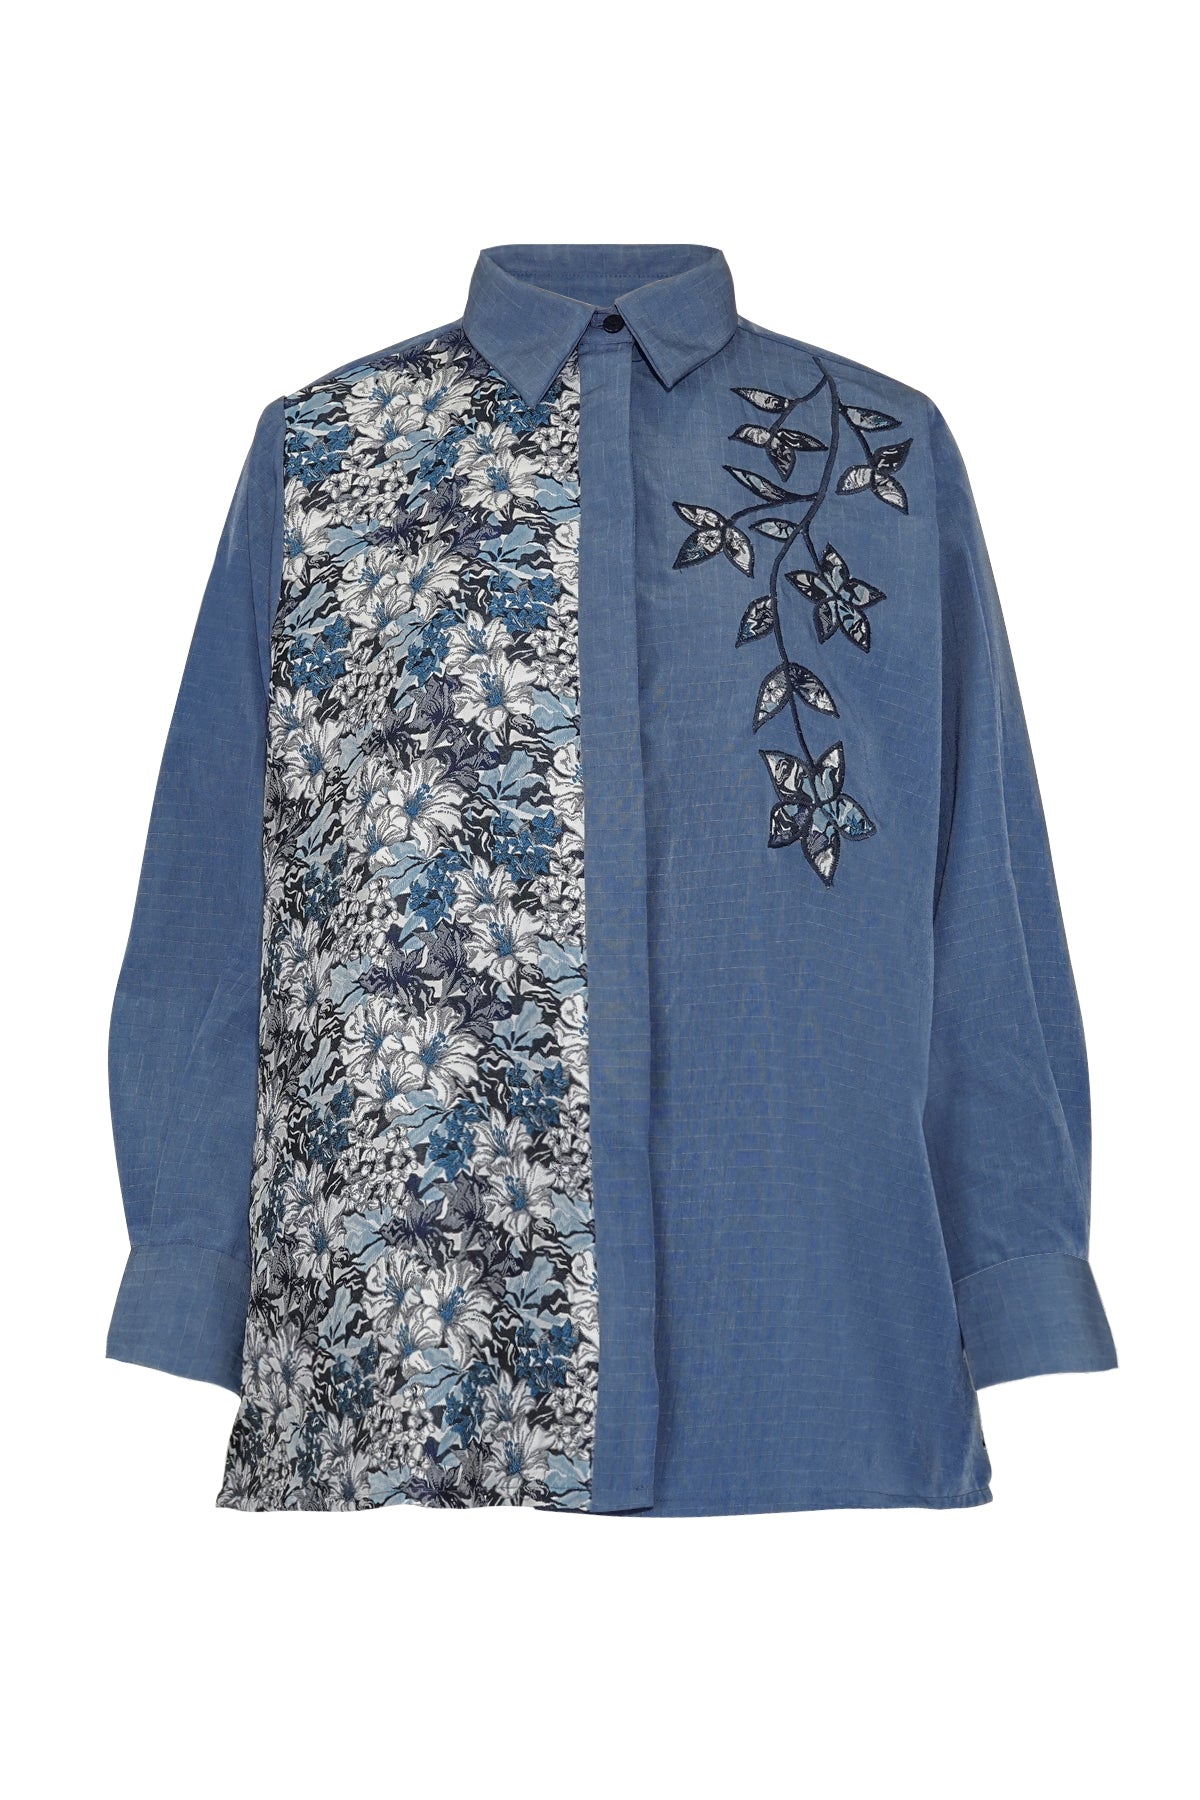 Athaya Jacquard Shirt - Blue